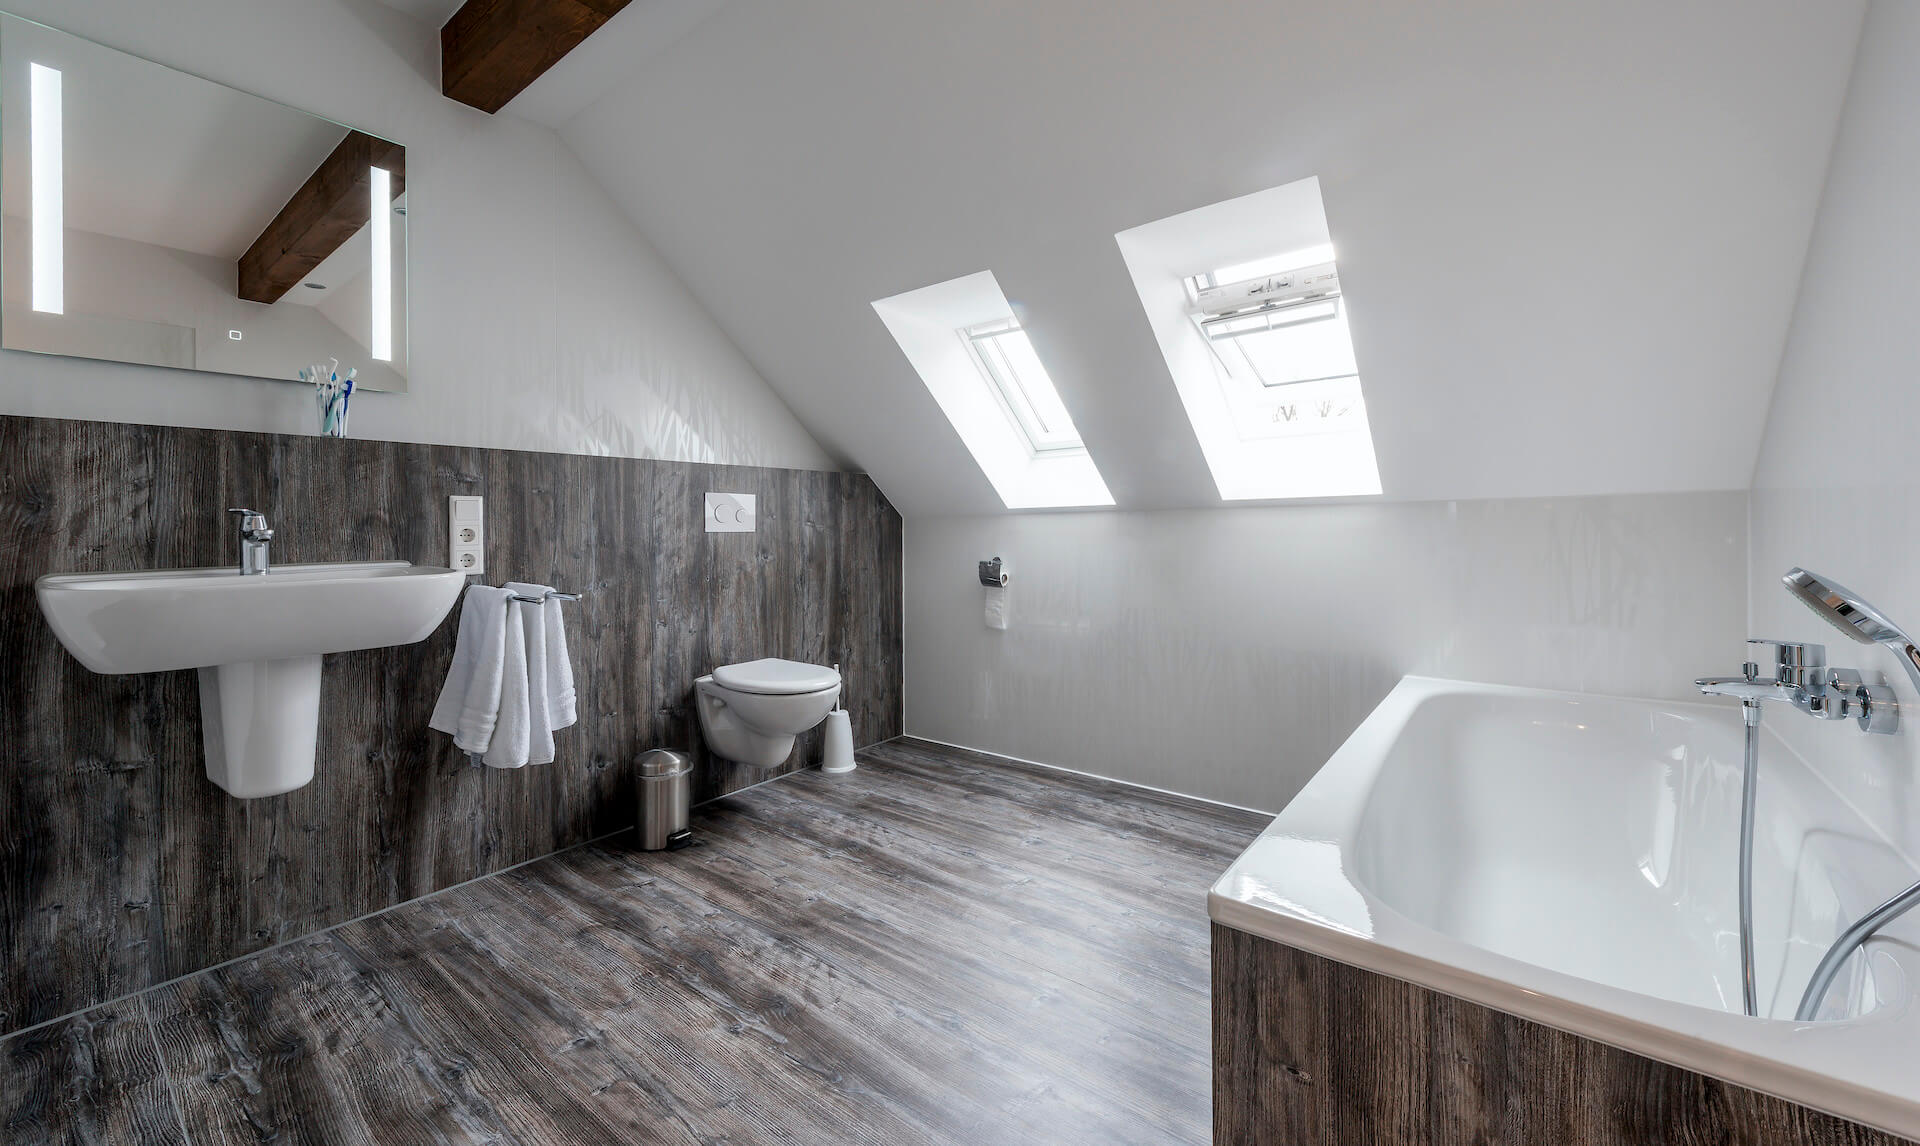 Bad aus einem Guss gestaltet mit Resopal SpaStyling, bodenebener Duschbereich. 